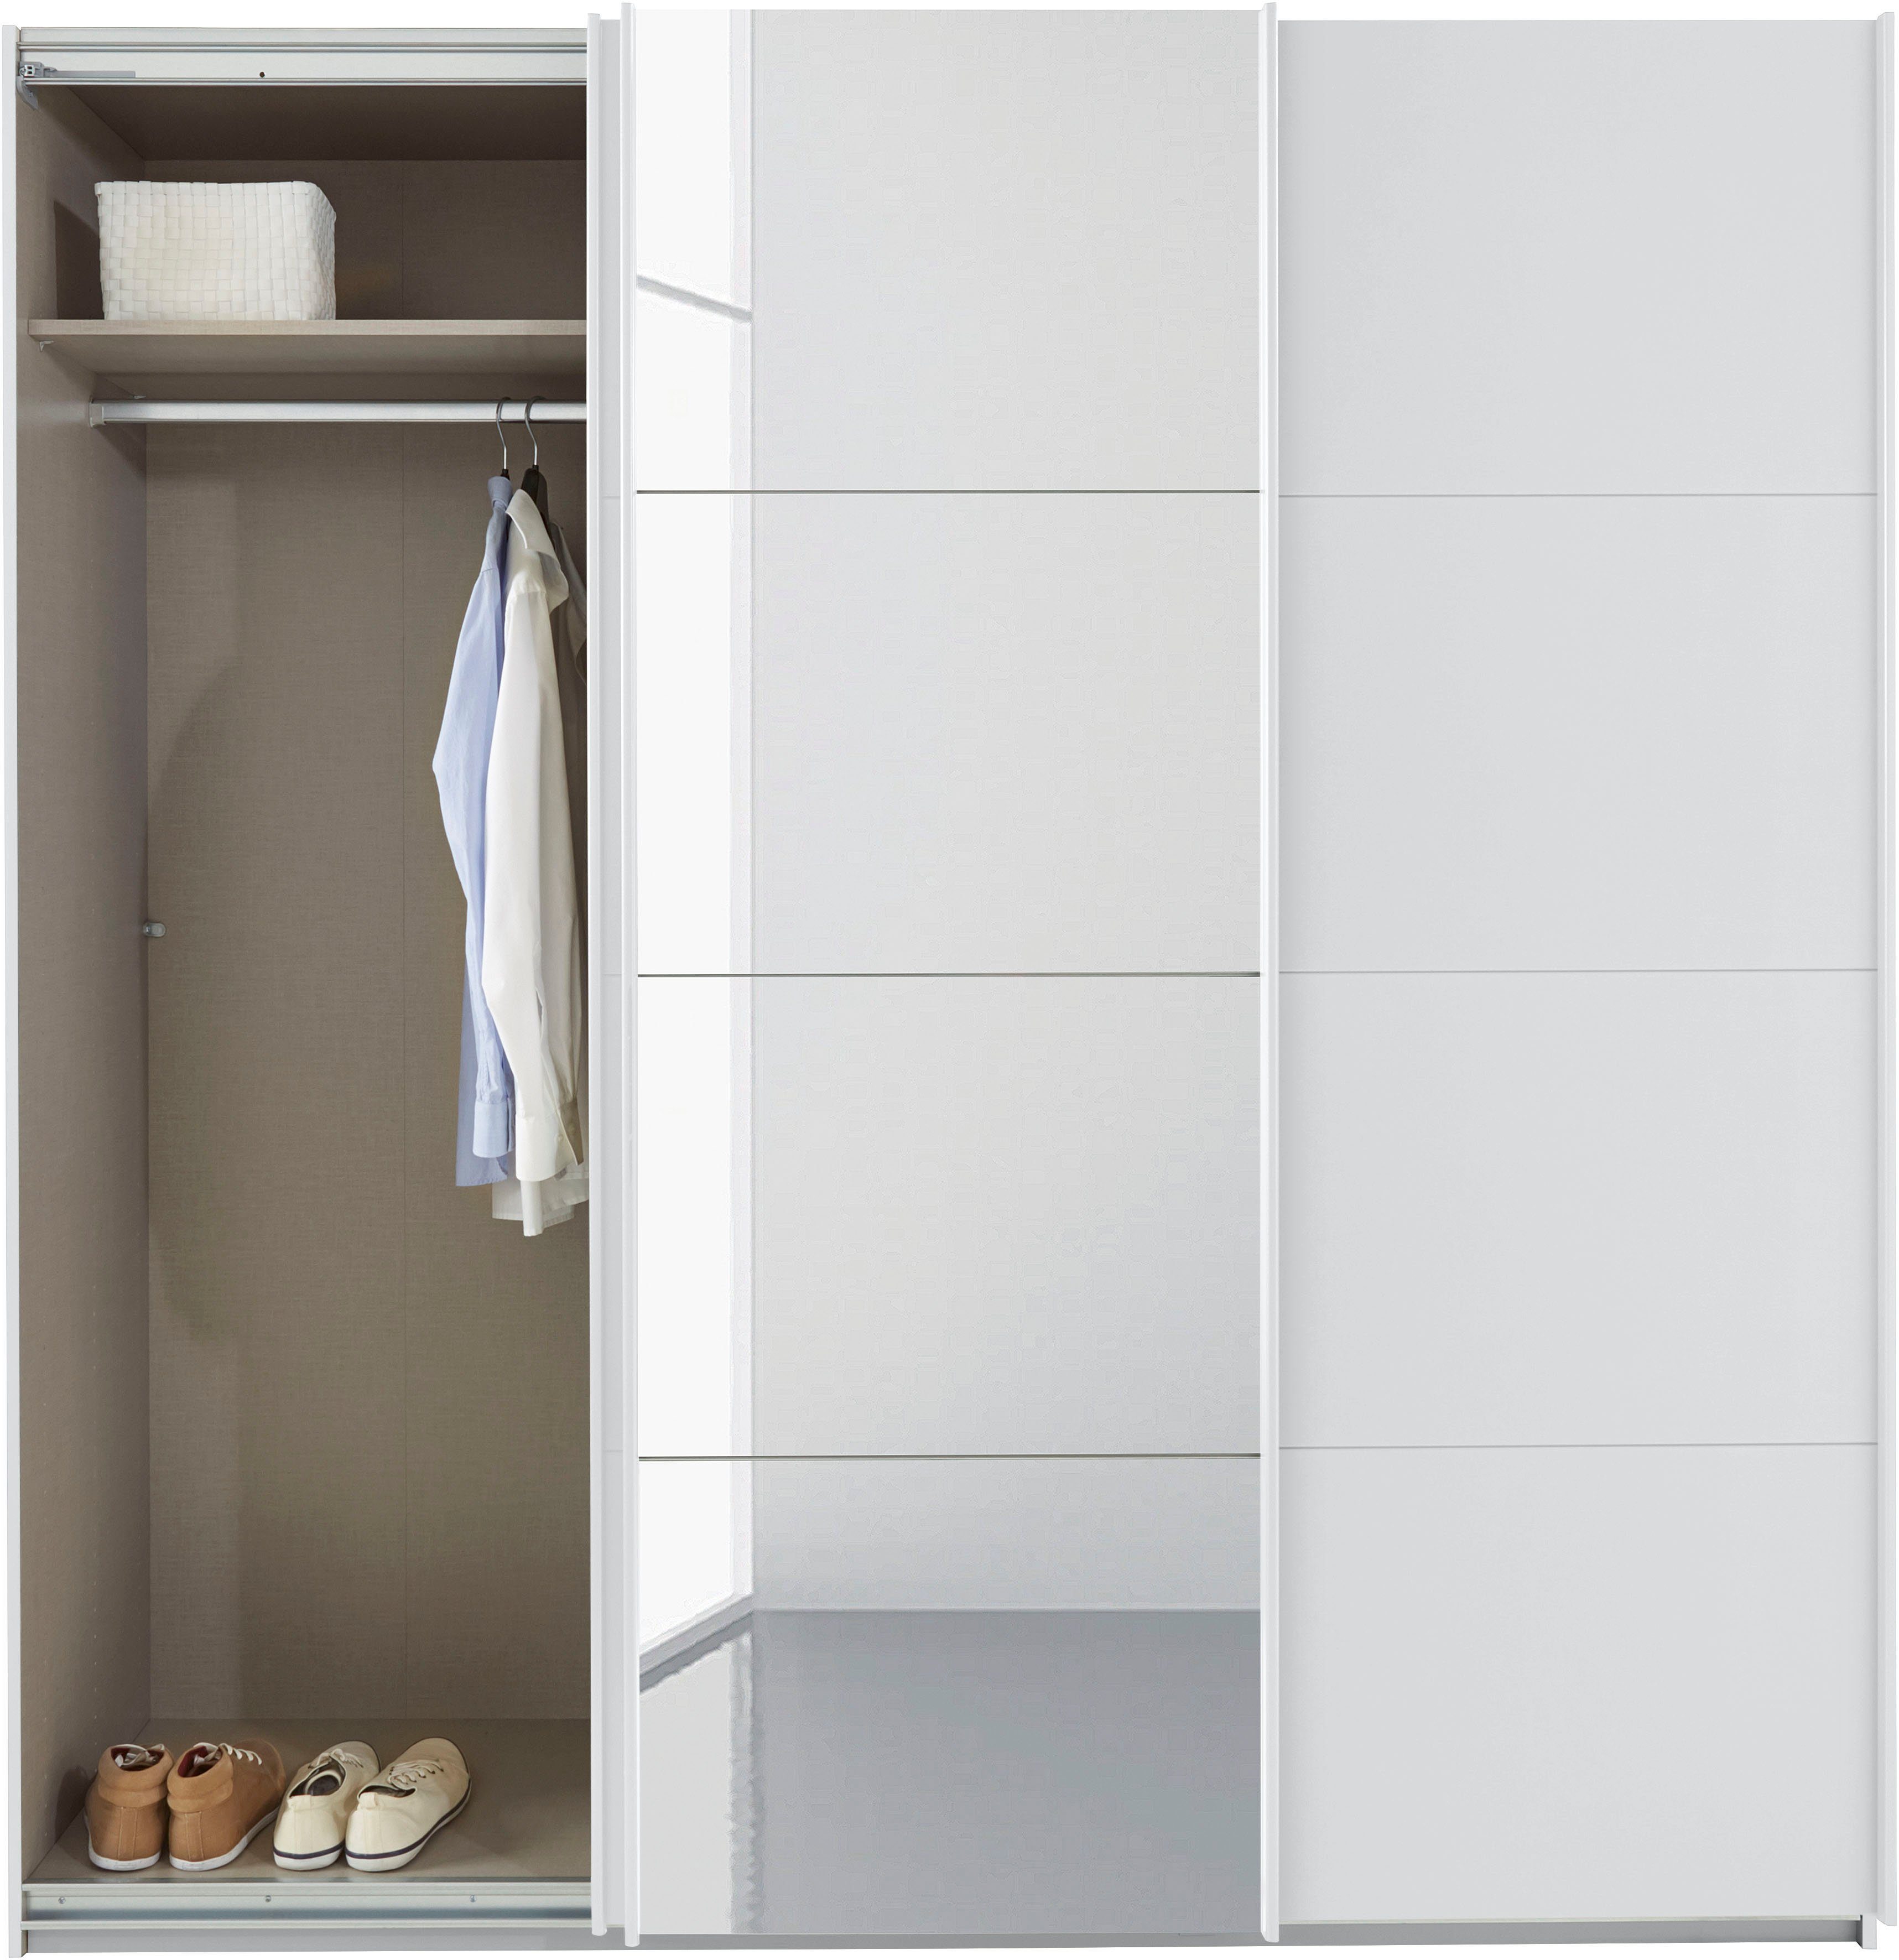 inkl. Oteli Schwebetürenschrank Weiß 3 Wäscheeinteilung sowie mit rauch zusätzlichen Innenschubladen Böden